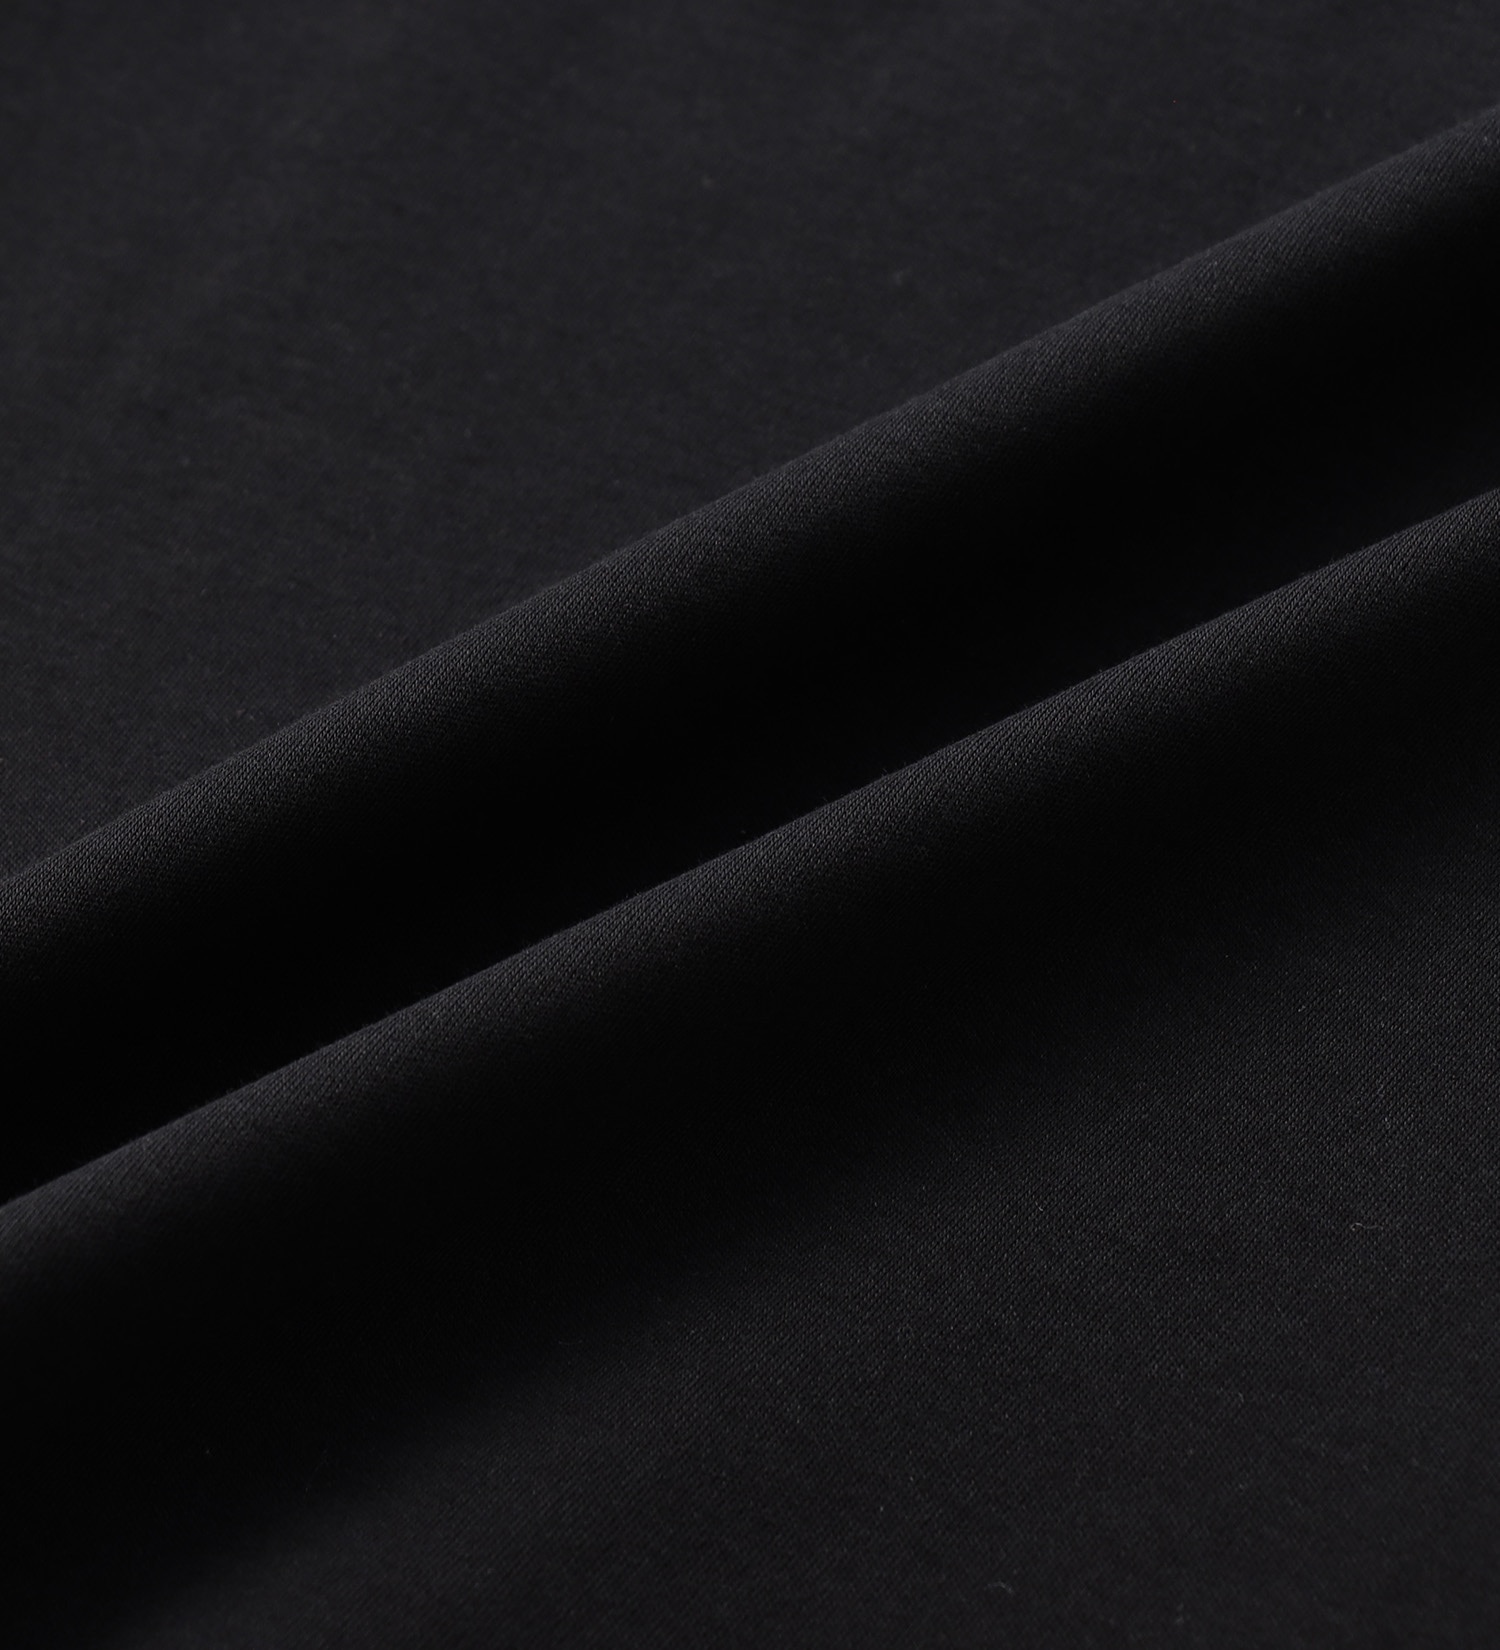 EDWIN(エドウイン)の【BLACKFRIDAY】ウエストリボン プルオーバーカットソー【アウトレット店舗・WEB限定】|トップス/Tシャツ/カットソー/レディース|ブラック